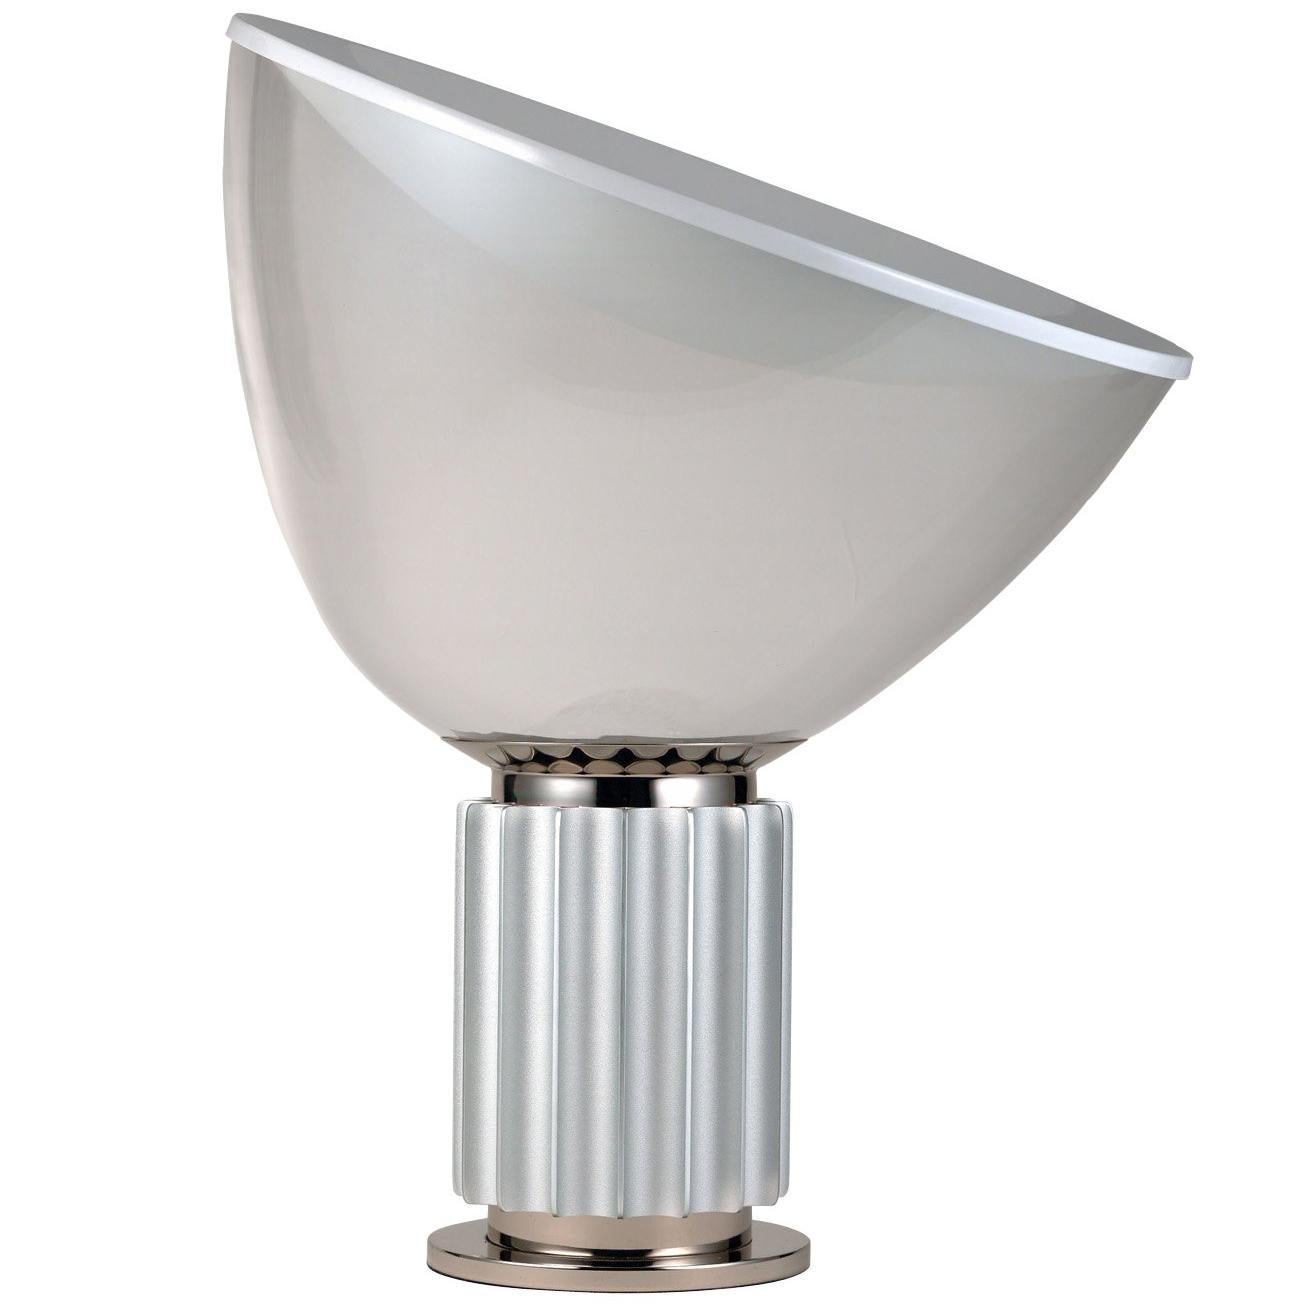 FLOS Taccia Led Diffuser Lamp in Silver by Achille & Pier Giacomo Castiglioni